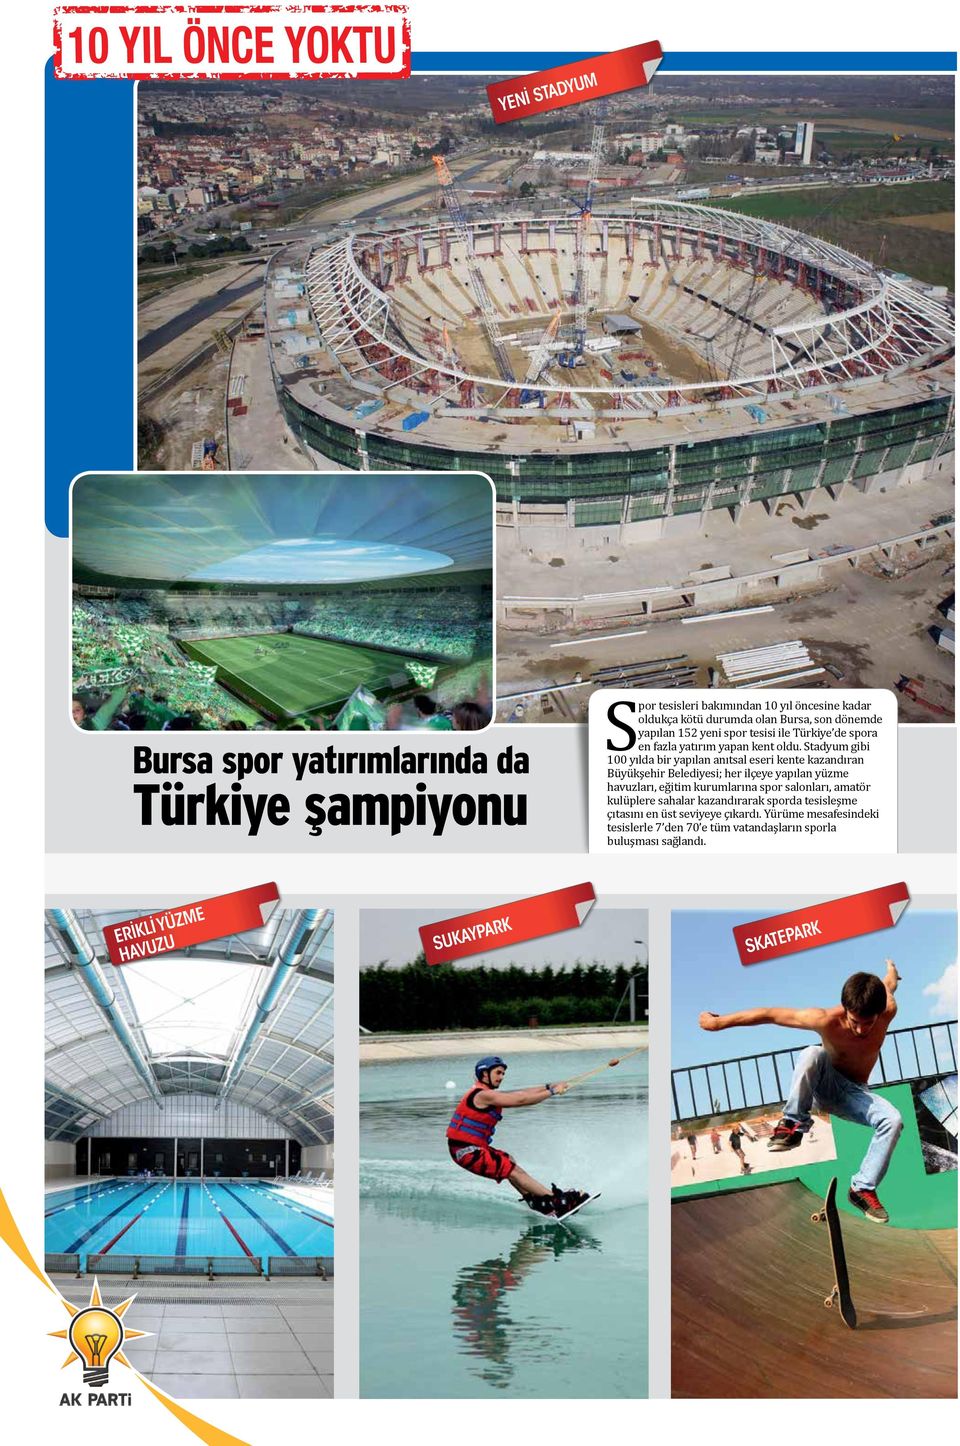 Stadyum gibi 100 yılda bir yapılan anıtsal eseri kente kazandıran Büyükşehir Belediyesi; her ilçeye yapılan yüzme havuzları, eğitim kurumlarına spor